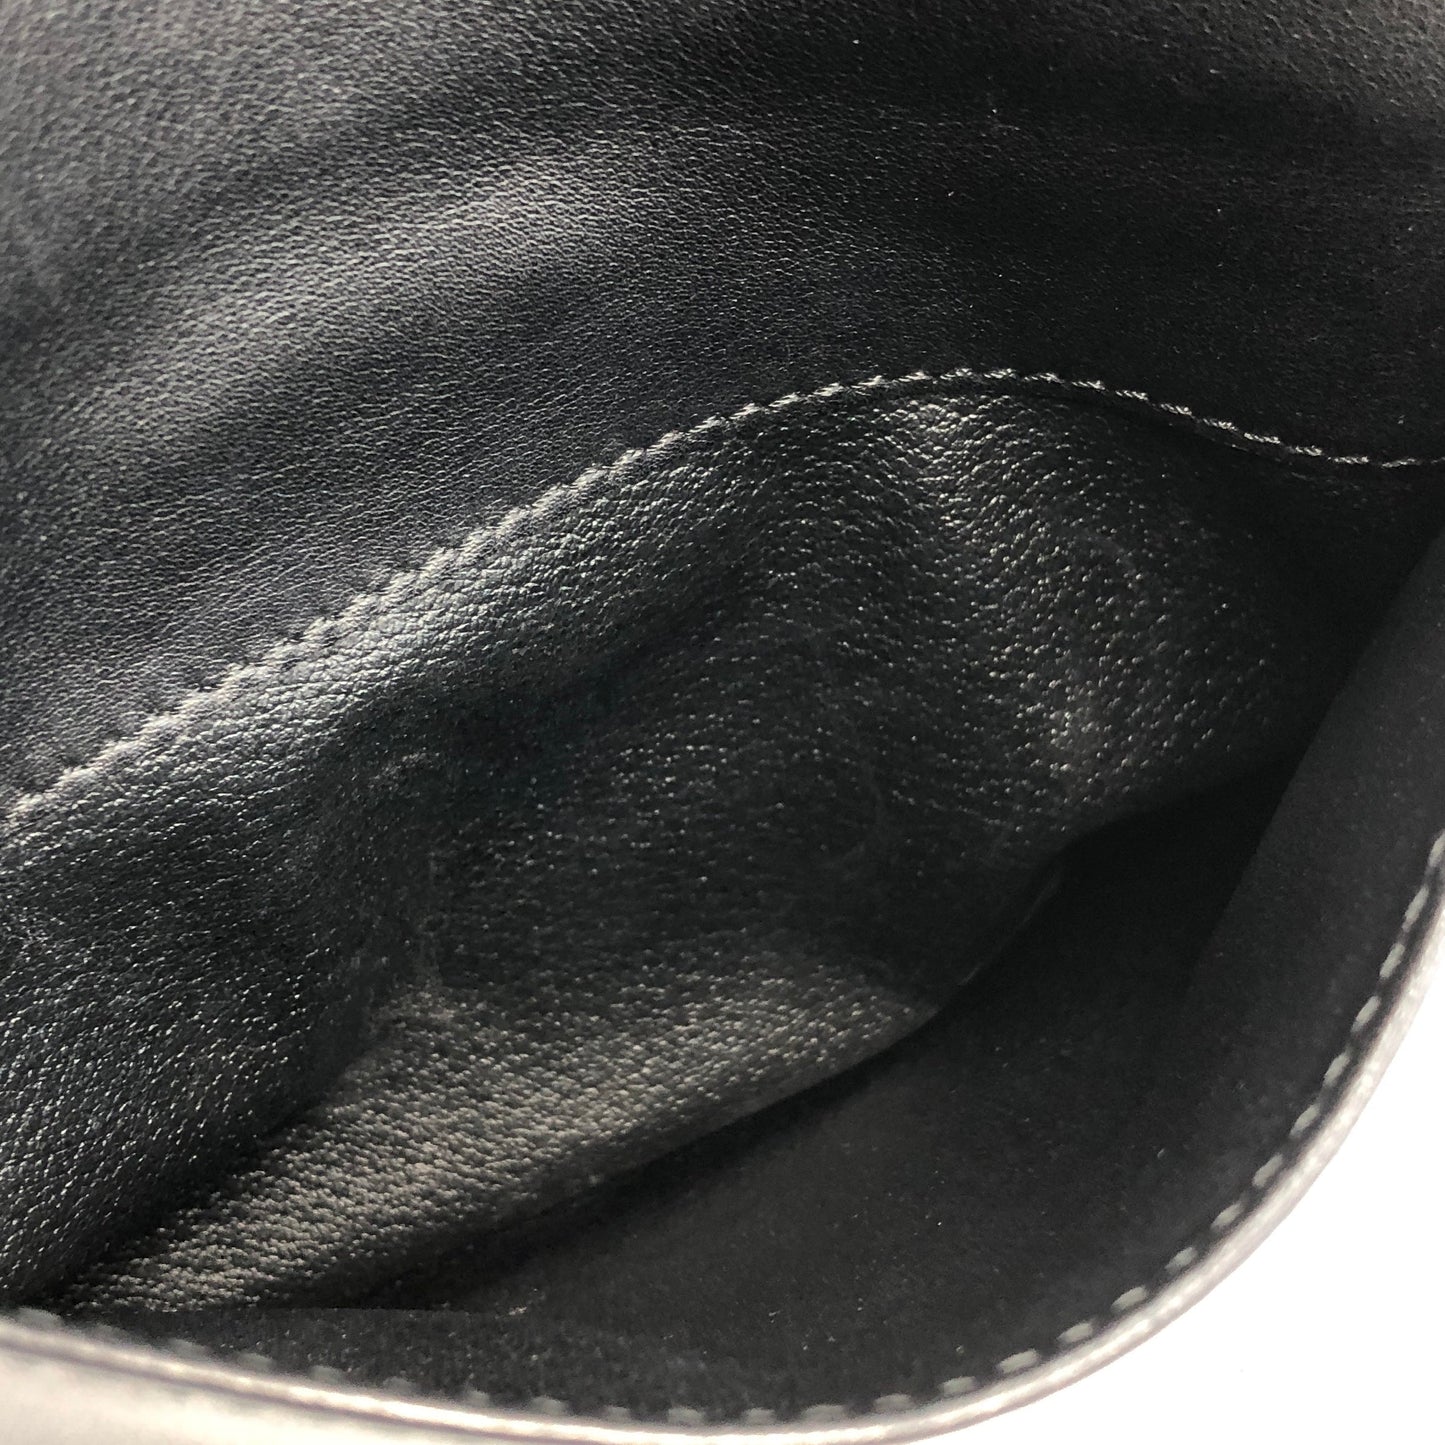 CELINE Front Zippier Flap Leather Shoulder bag Black Vintage Old Celine dbaxwe